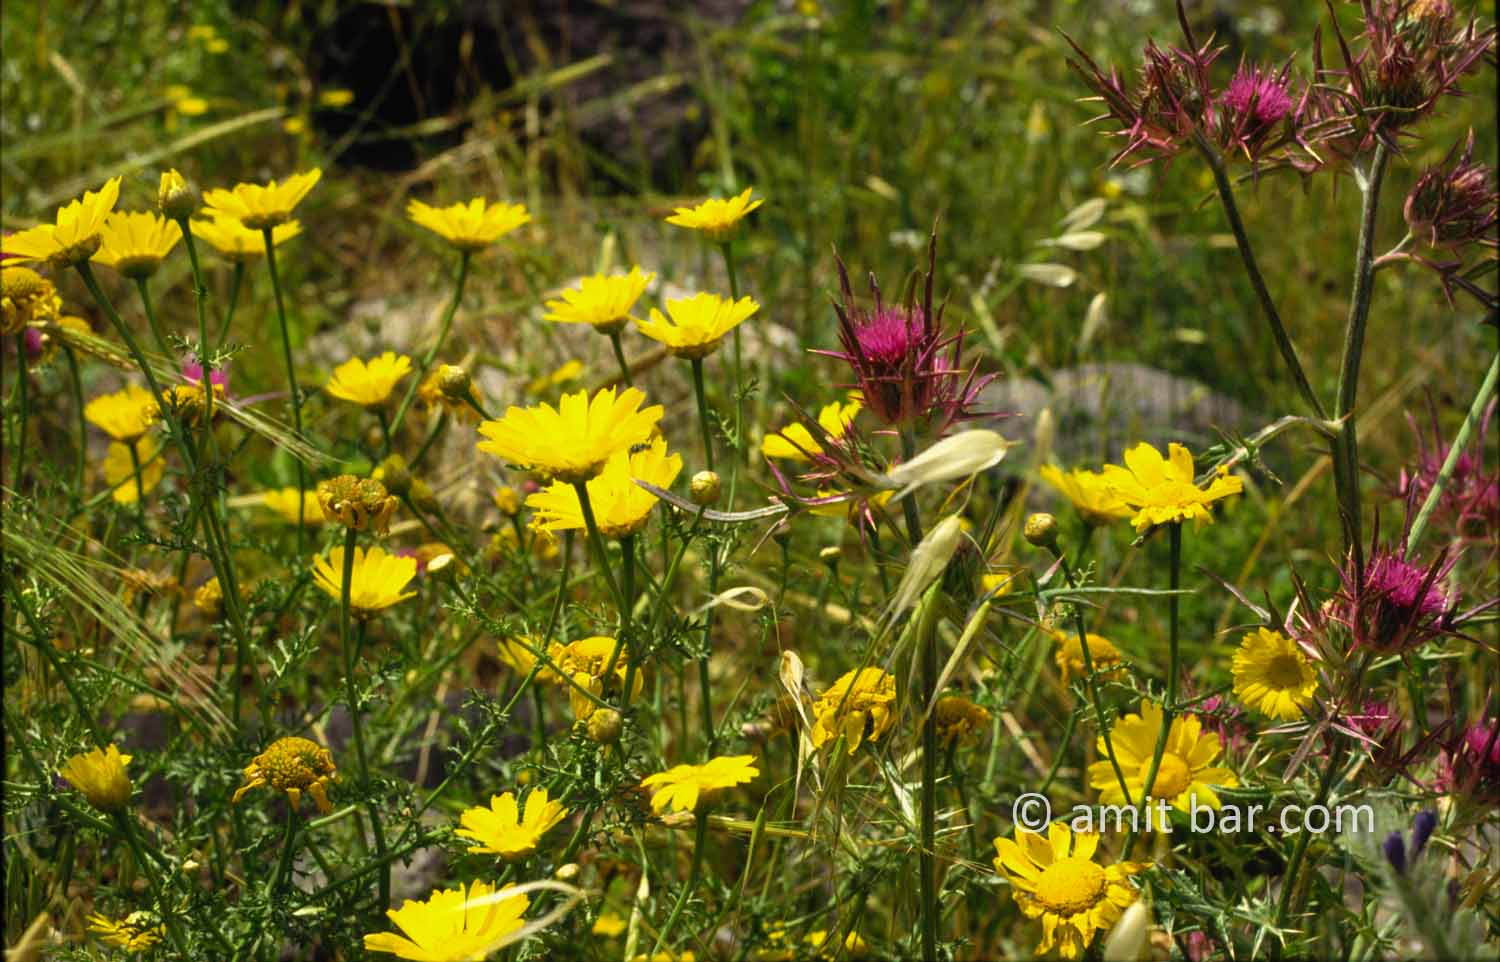 Wild flowers in Israel II: Wild flowers at spring time in Israel